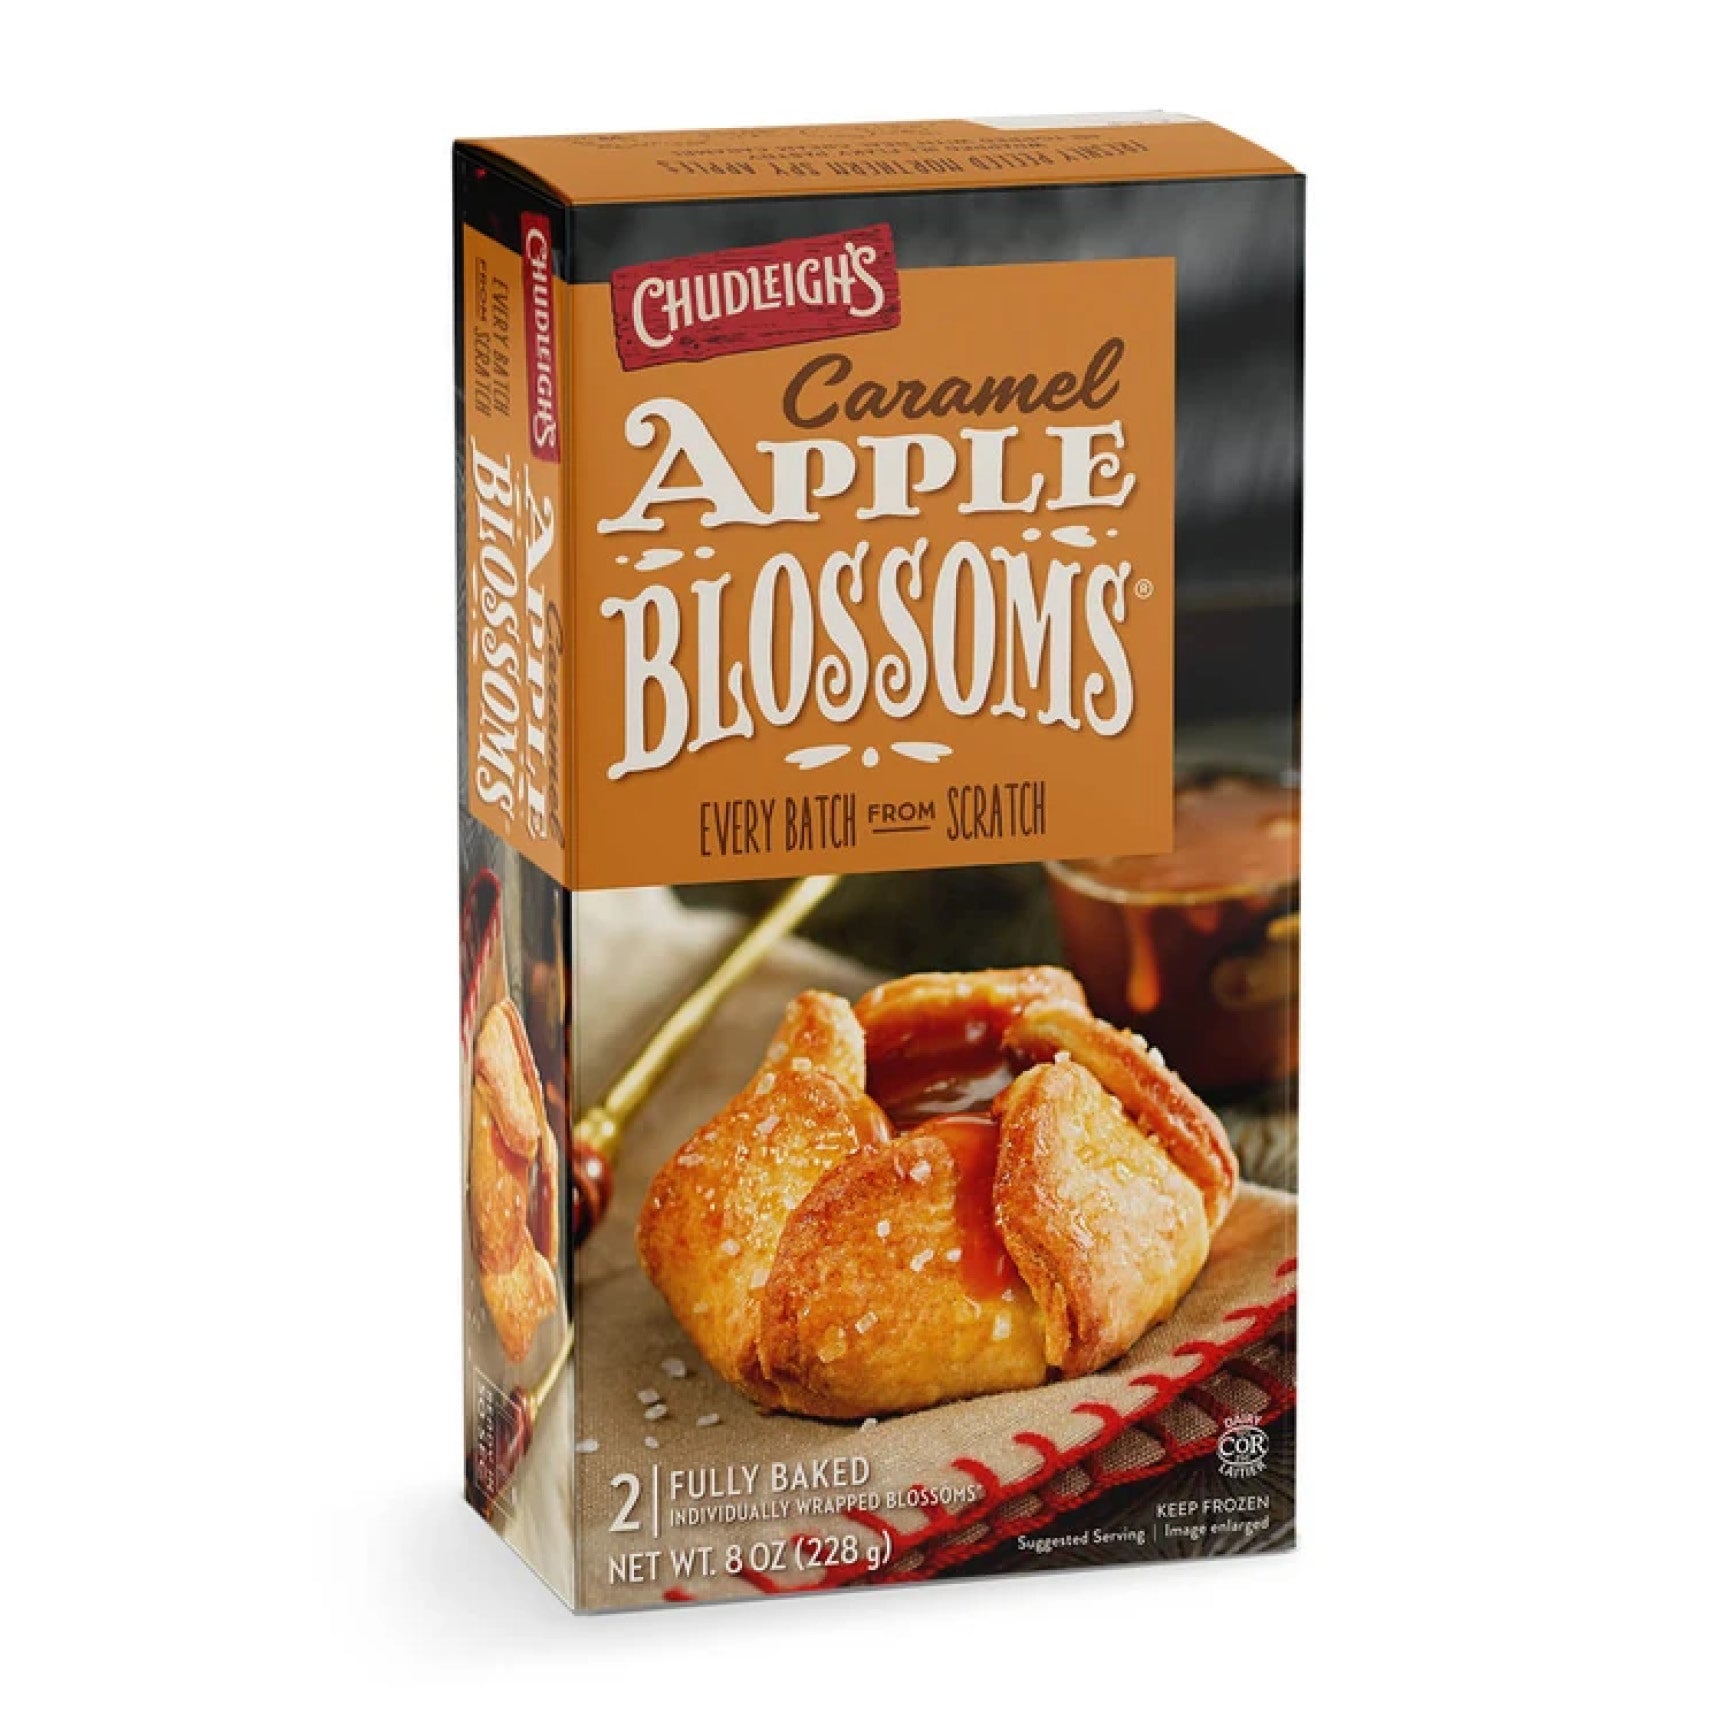 Chudleigh's Caramel Apple Blossoms Dessert, 228g